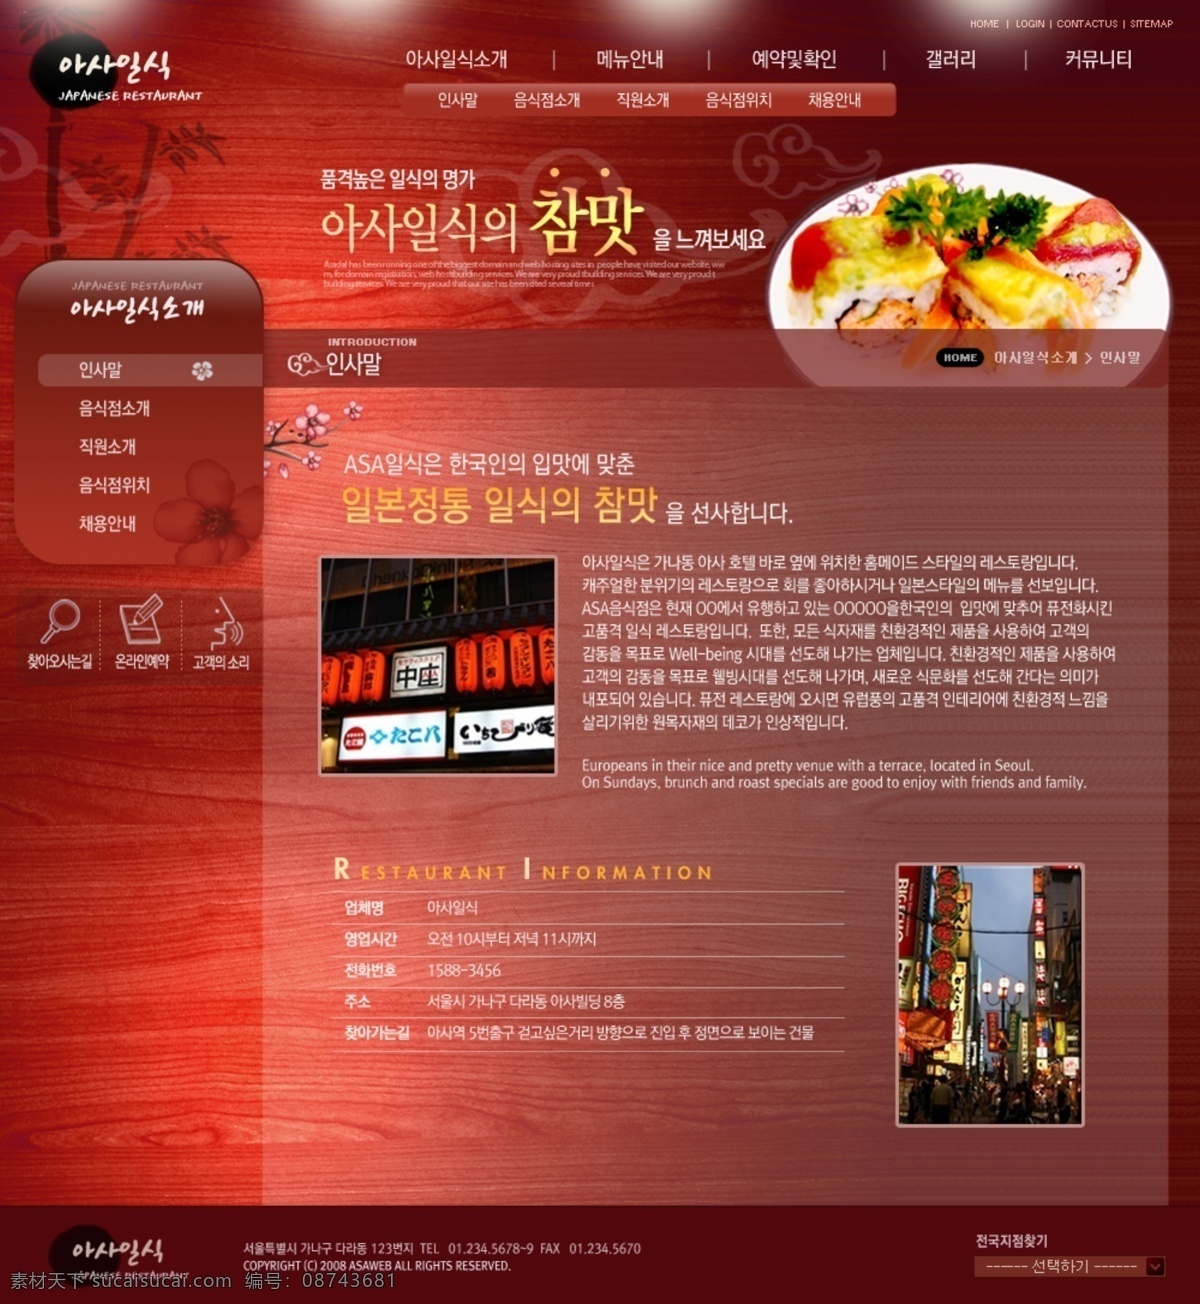 红色 韩国 美食 网页模板 焐 朗 惩 衬 逅 夭 南 略 网页素材